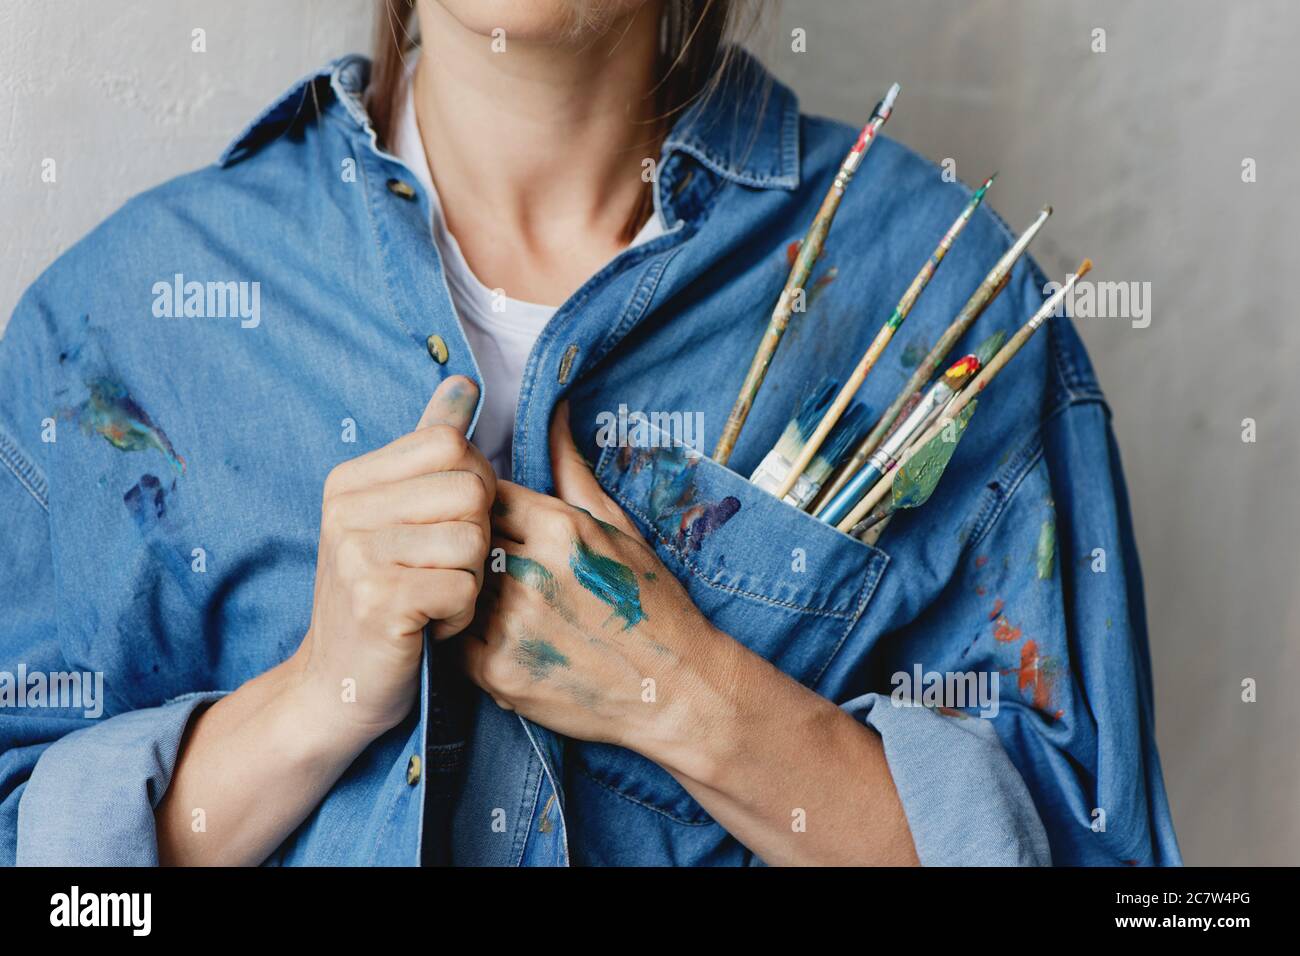 Immagine tagliata di donna con pennelli e coltello per la pittura messi nella tasca della sua camicia in denim. Foto Stock